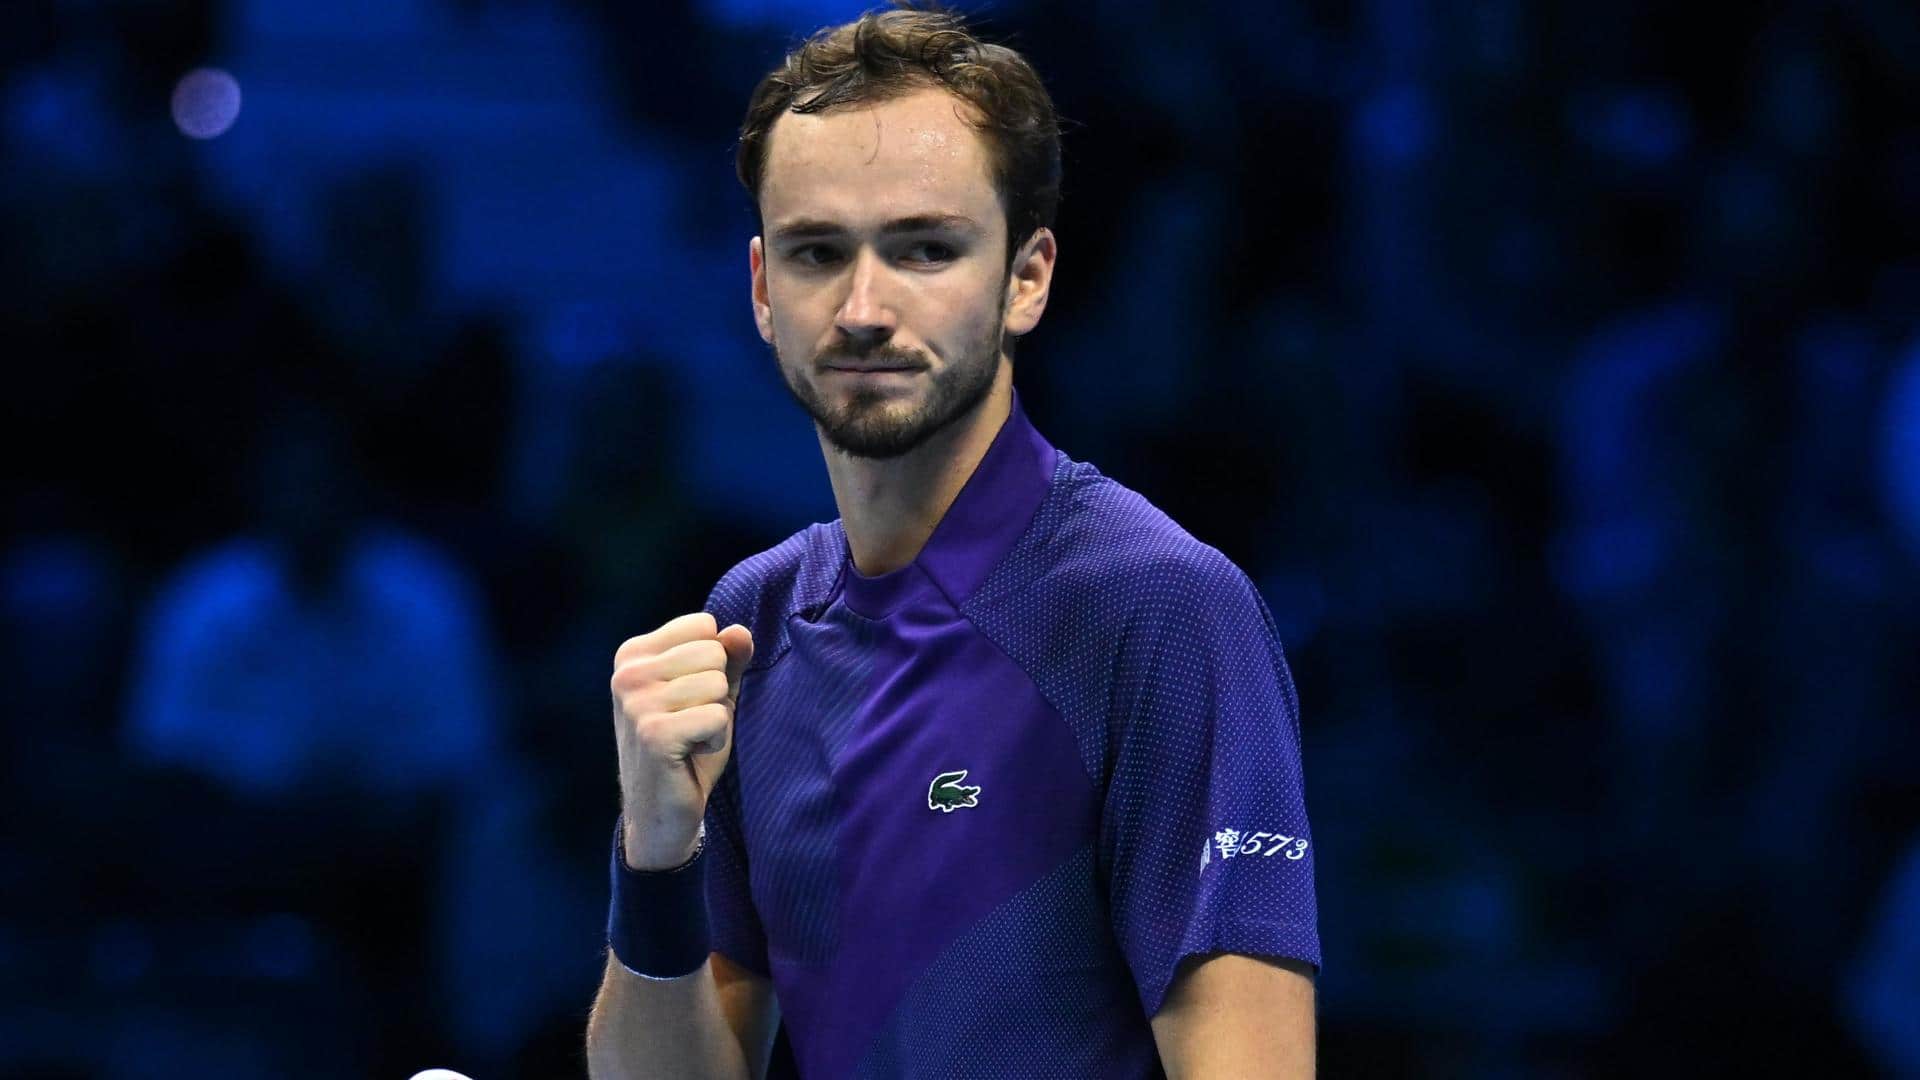 2022 ATP Finals, Daniil Medvedev gets knocked out: Key stats